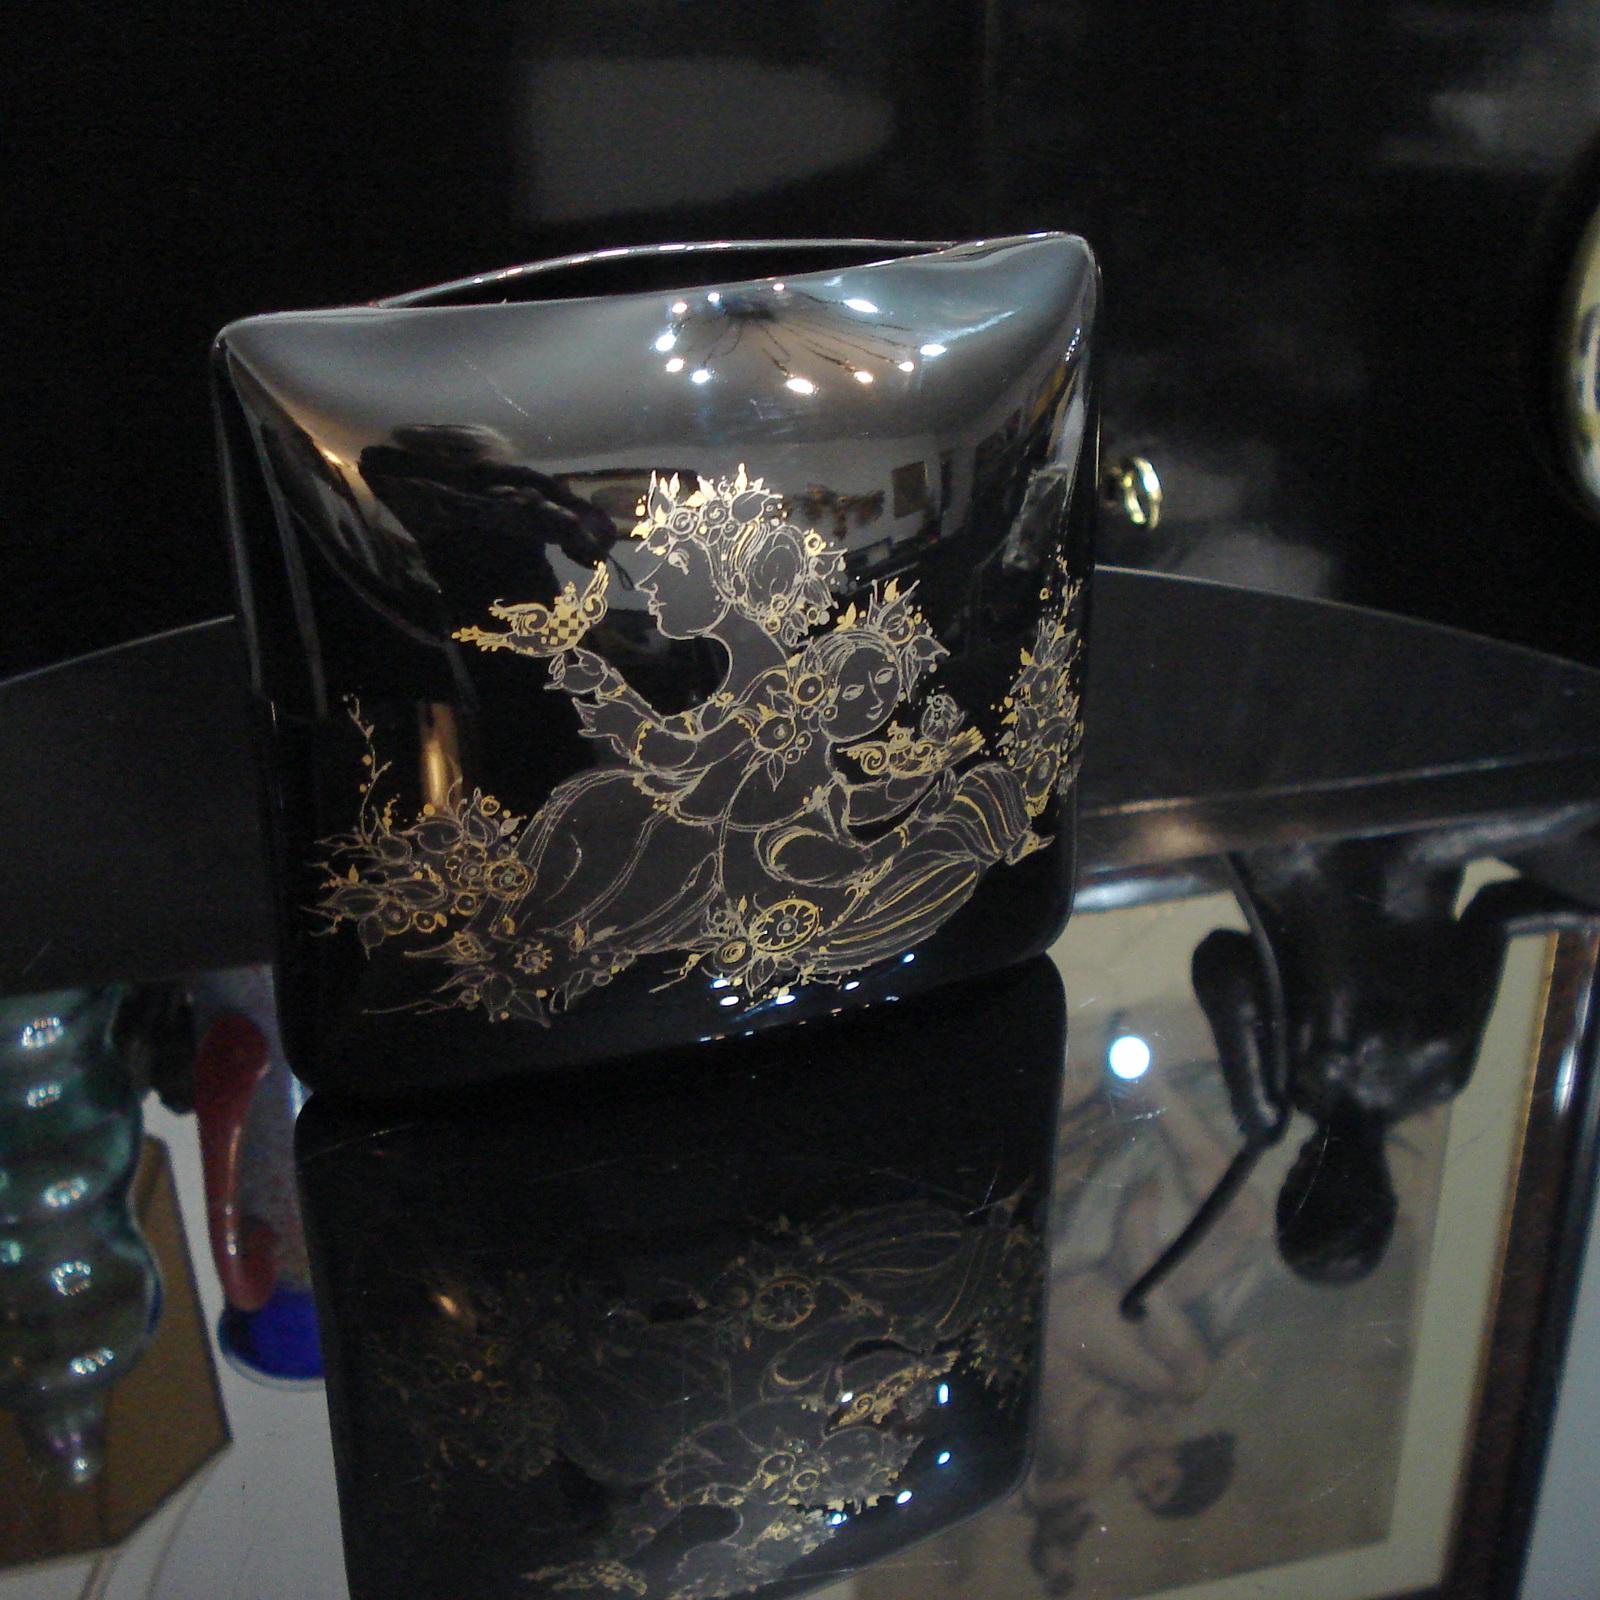 Merveilleuse porcelaine noire richement décorée de peintures à la main en or, conçue par Björn Wiinblad pour Rosenthal, vers les années 1970.
En forme de coussin, ce vase sera le point de mire de votre intérieur.
Excellent état.
Dimensions : 16,5